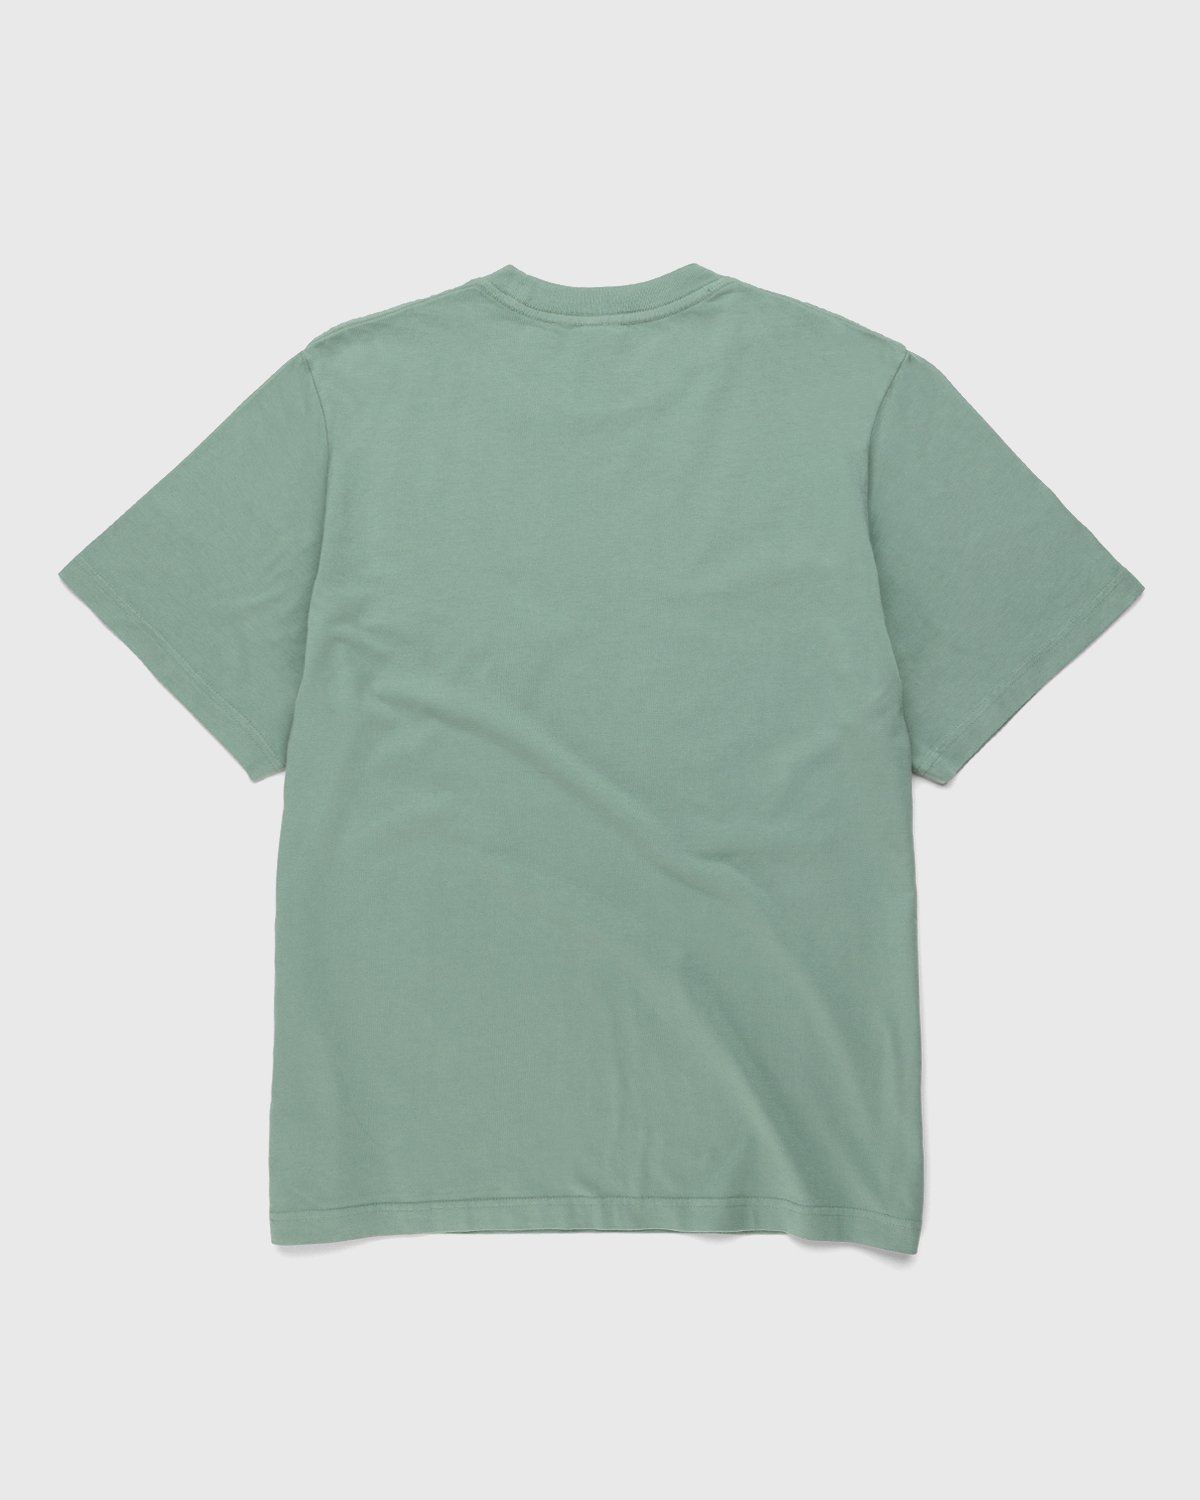 Noon Goons – Co-Ed T-Shirt Green - T-Shirts - Green - Image 2